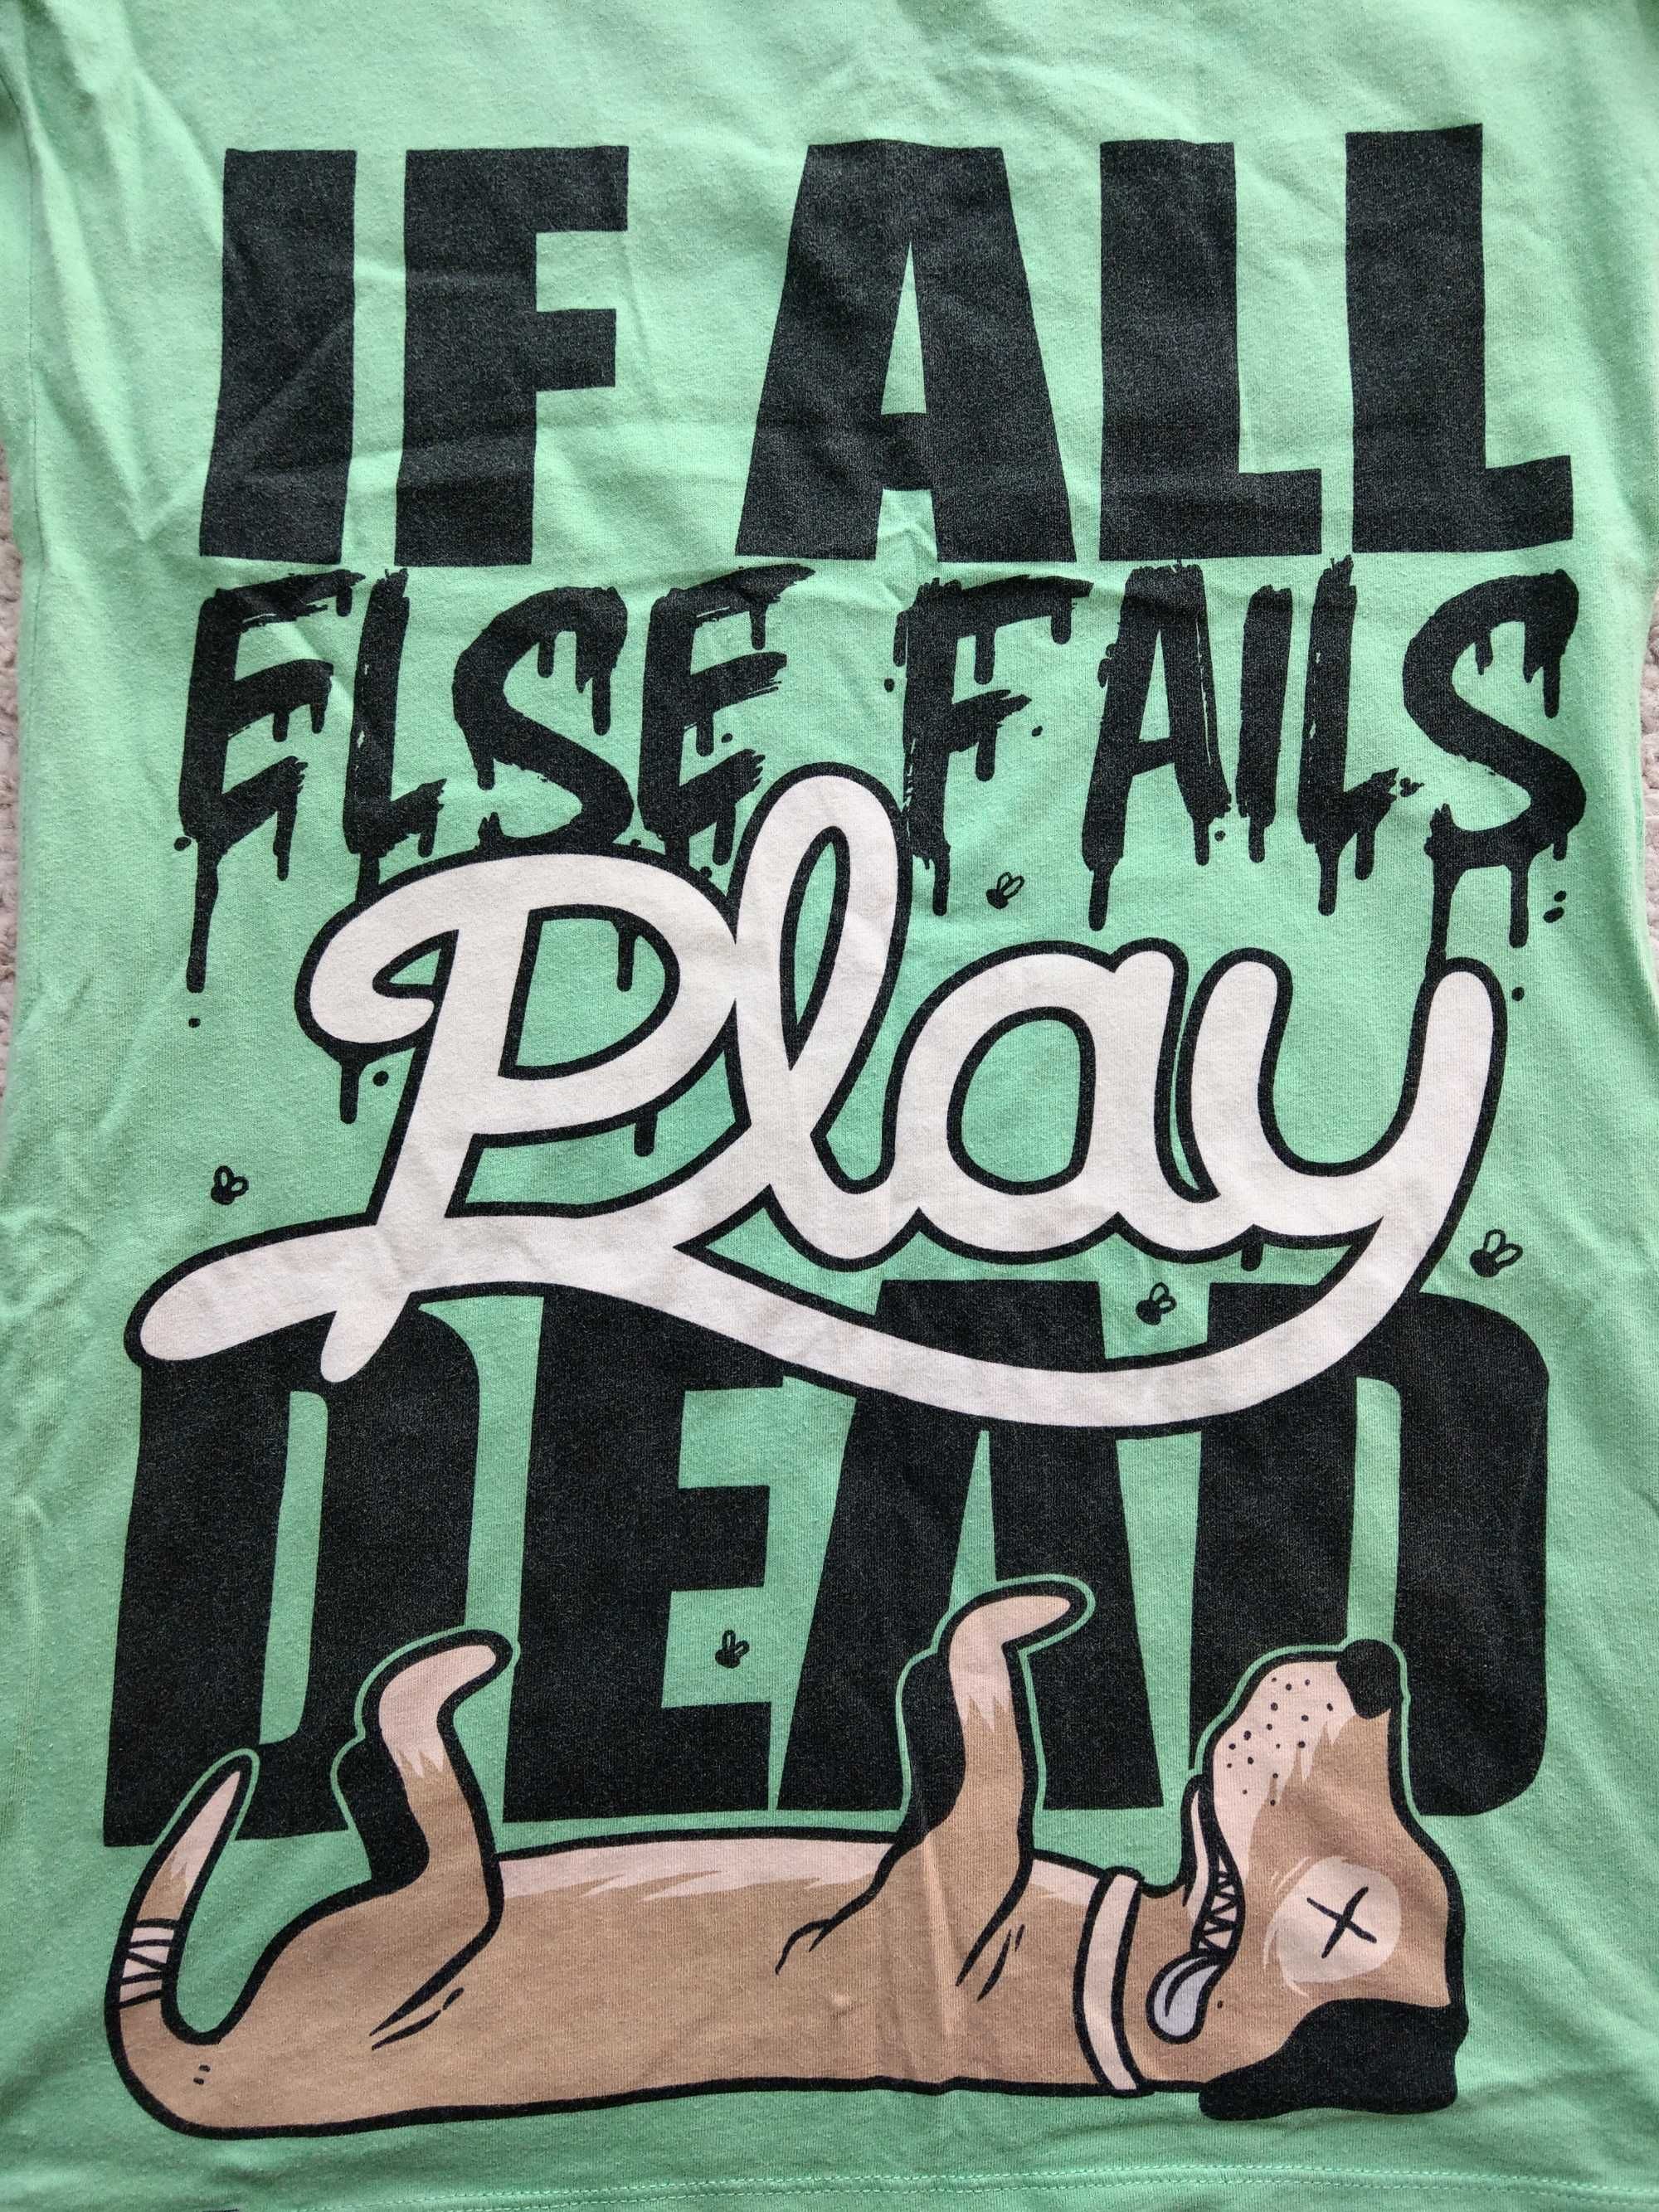 Drop dead if all else fails play dead dropdead tshirt t-shirt